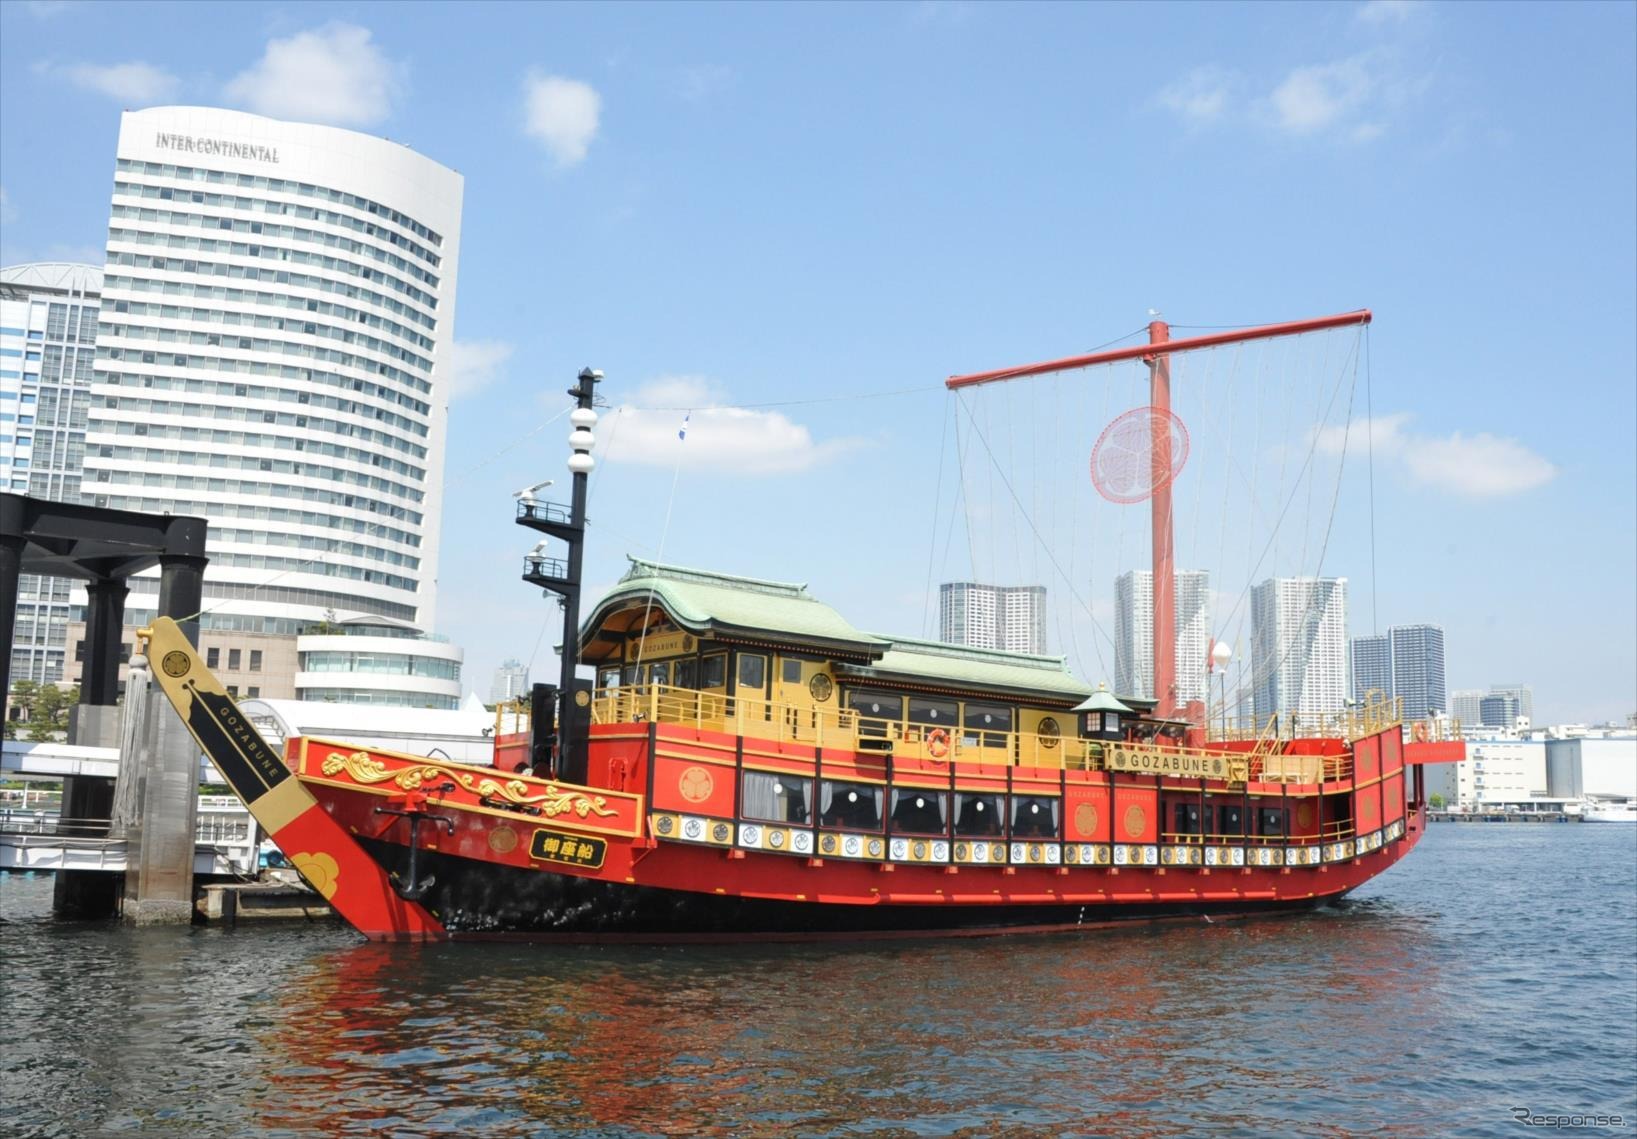 かつて江戸大名の乗った豪華船である御座船を模した「安宅丸」で「大名庭園の遺産登録を働きかける」